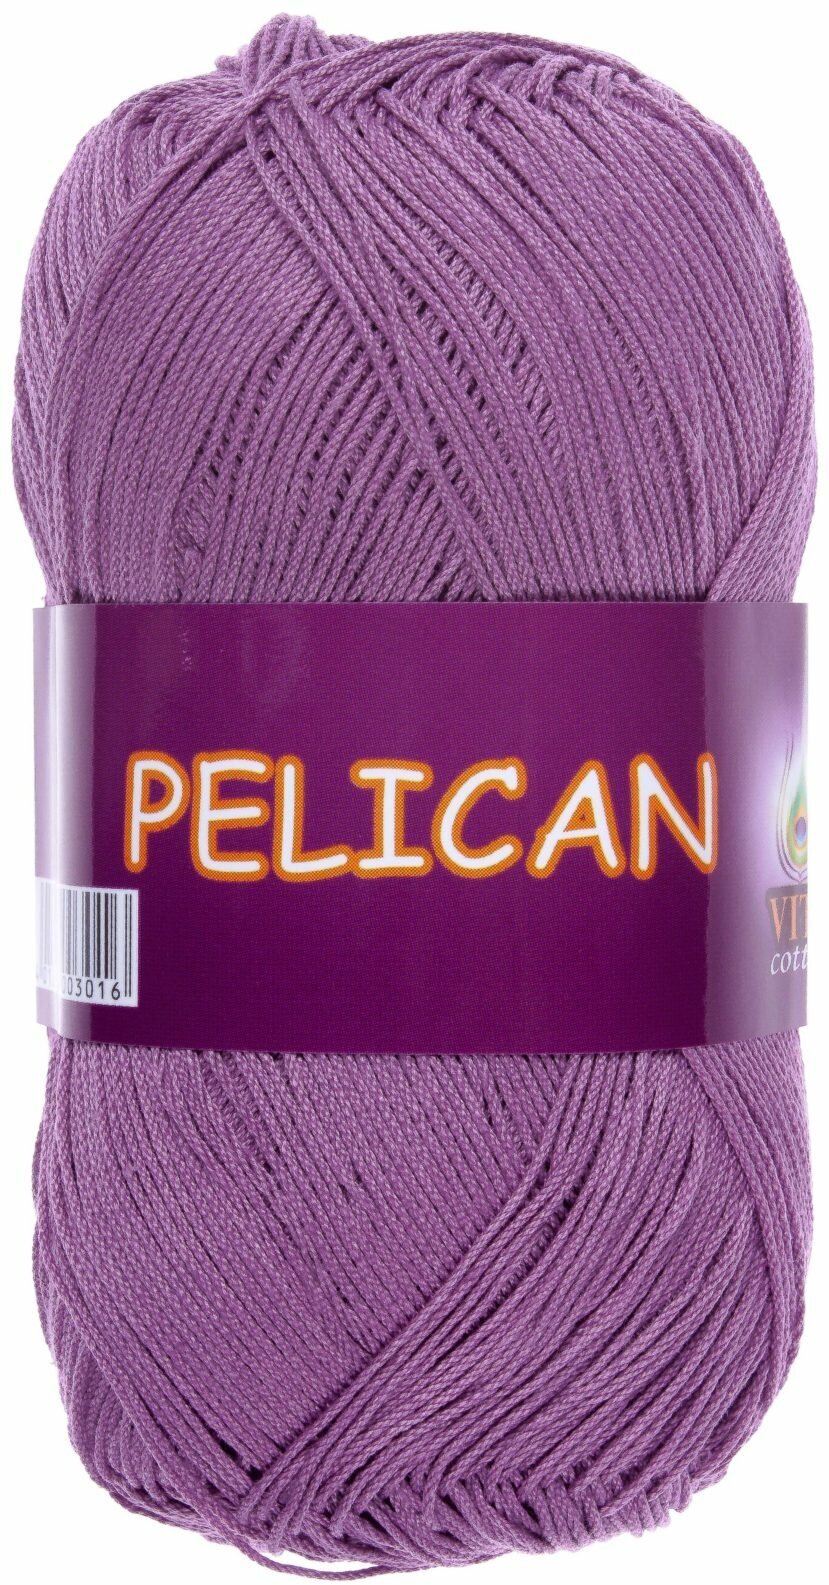 Пряжа Vita cotton Pelican пыльная сирень (4008), 100%хлопок, 330м, 50г, 1шт